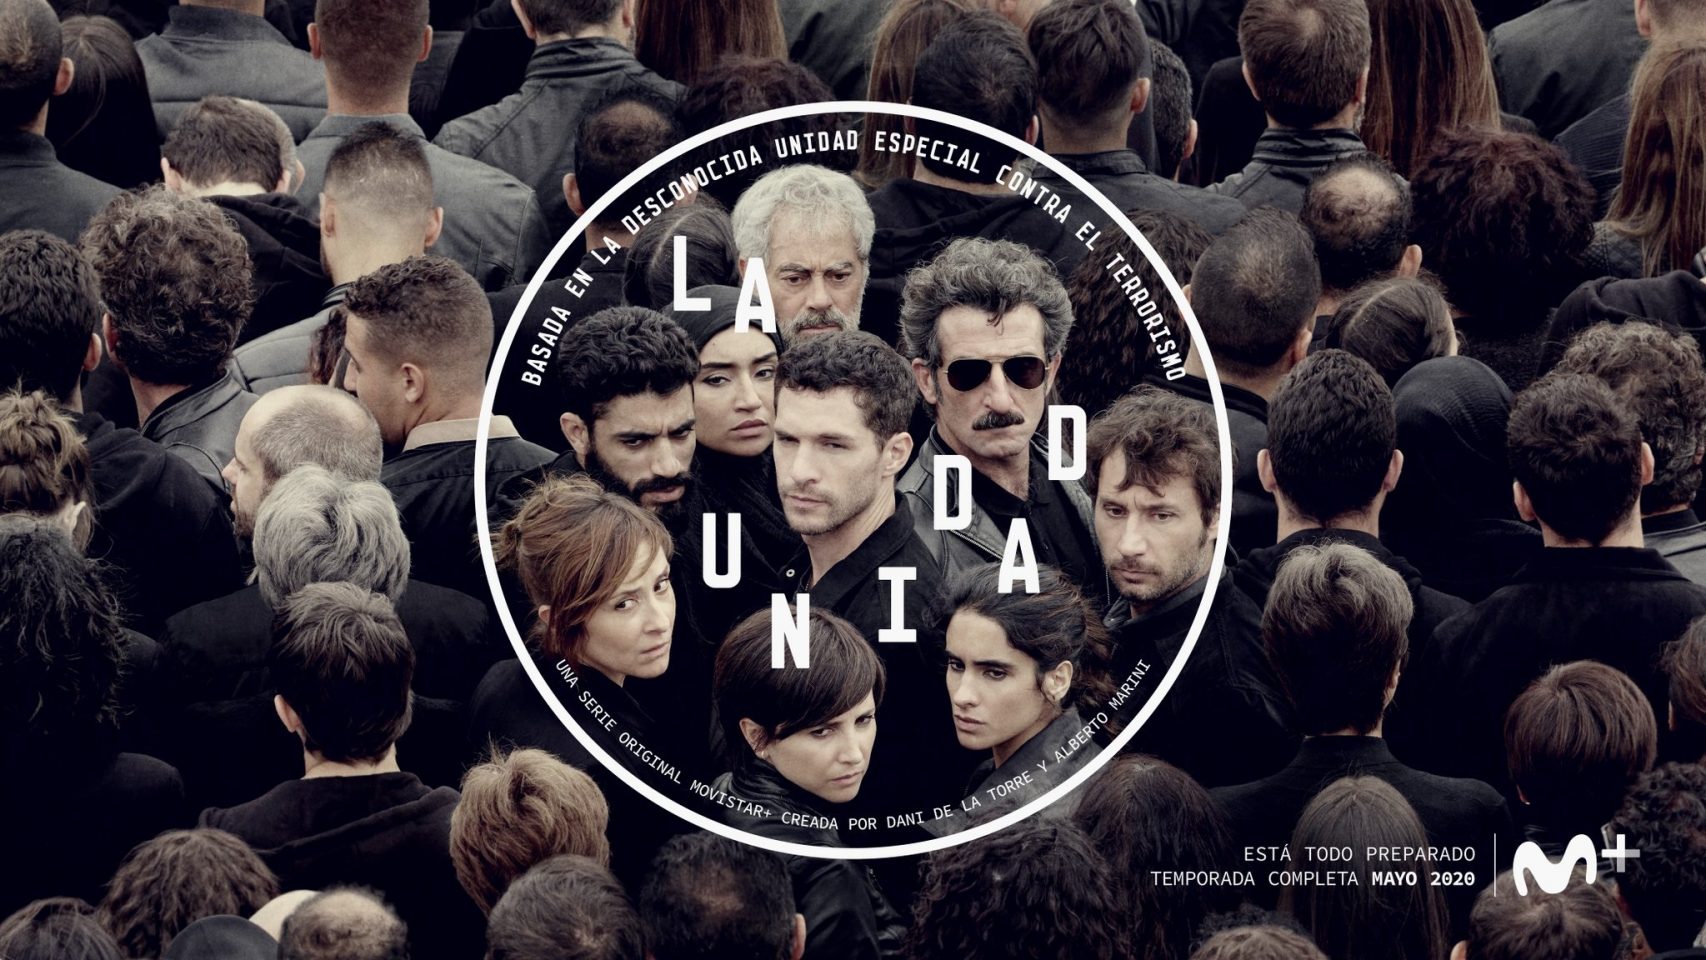 La Unidad, nueva serie de Dani de la Torre. 